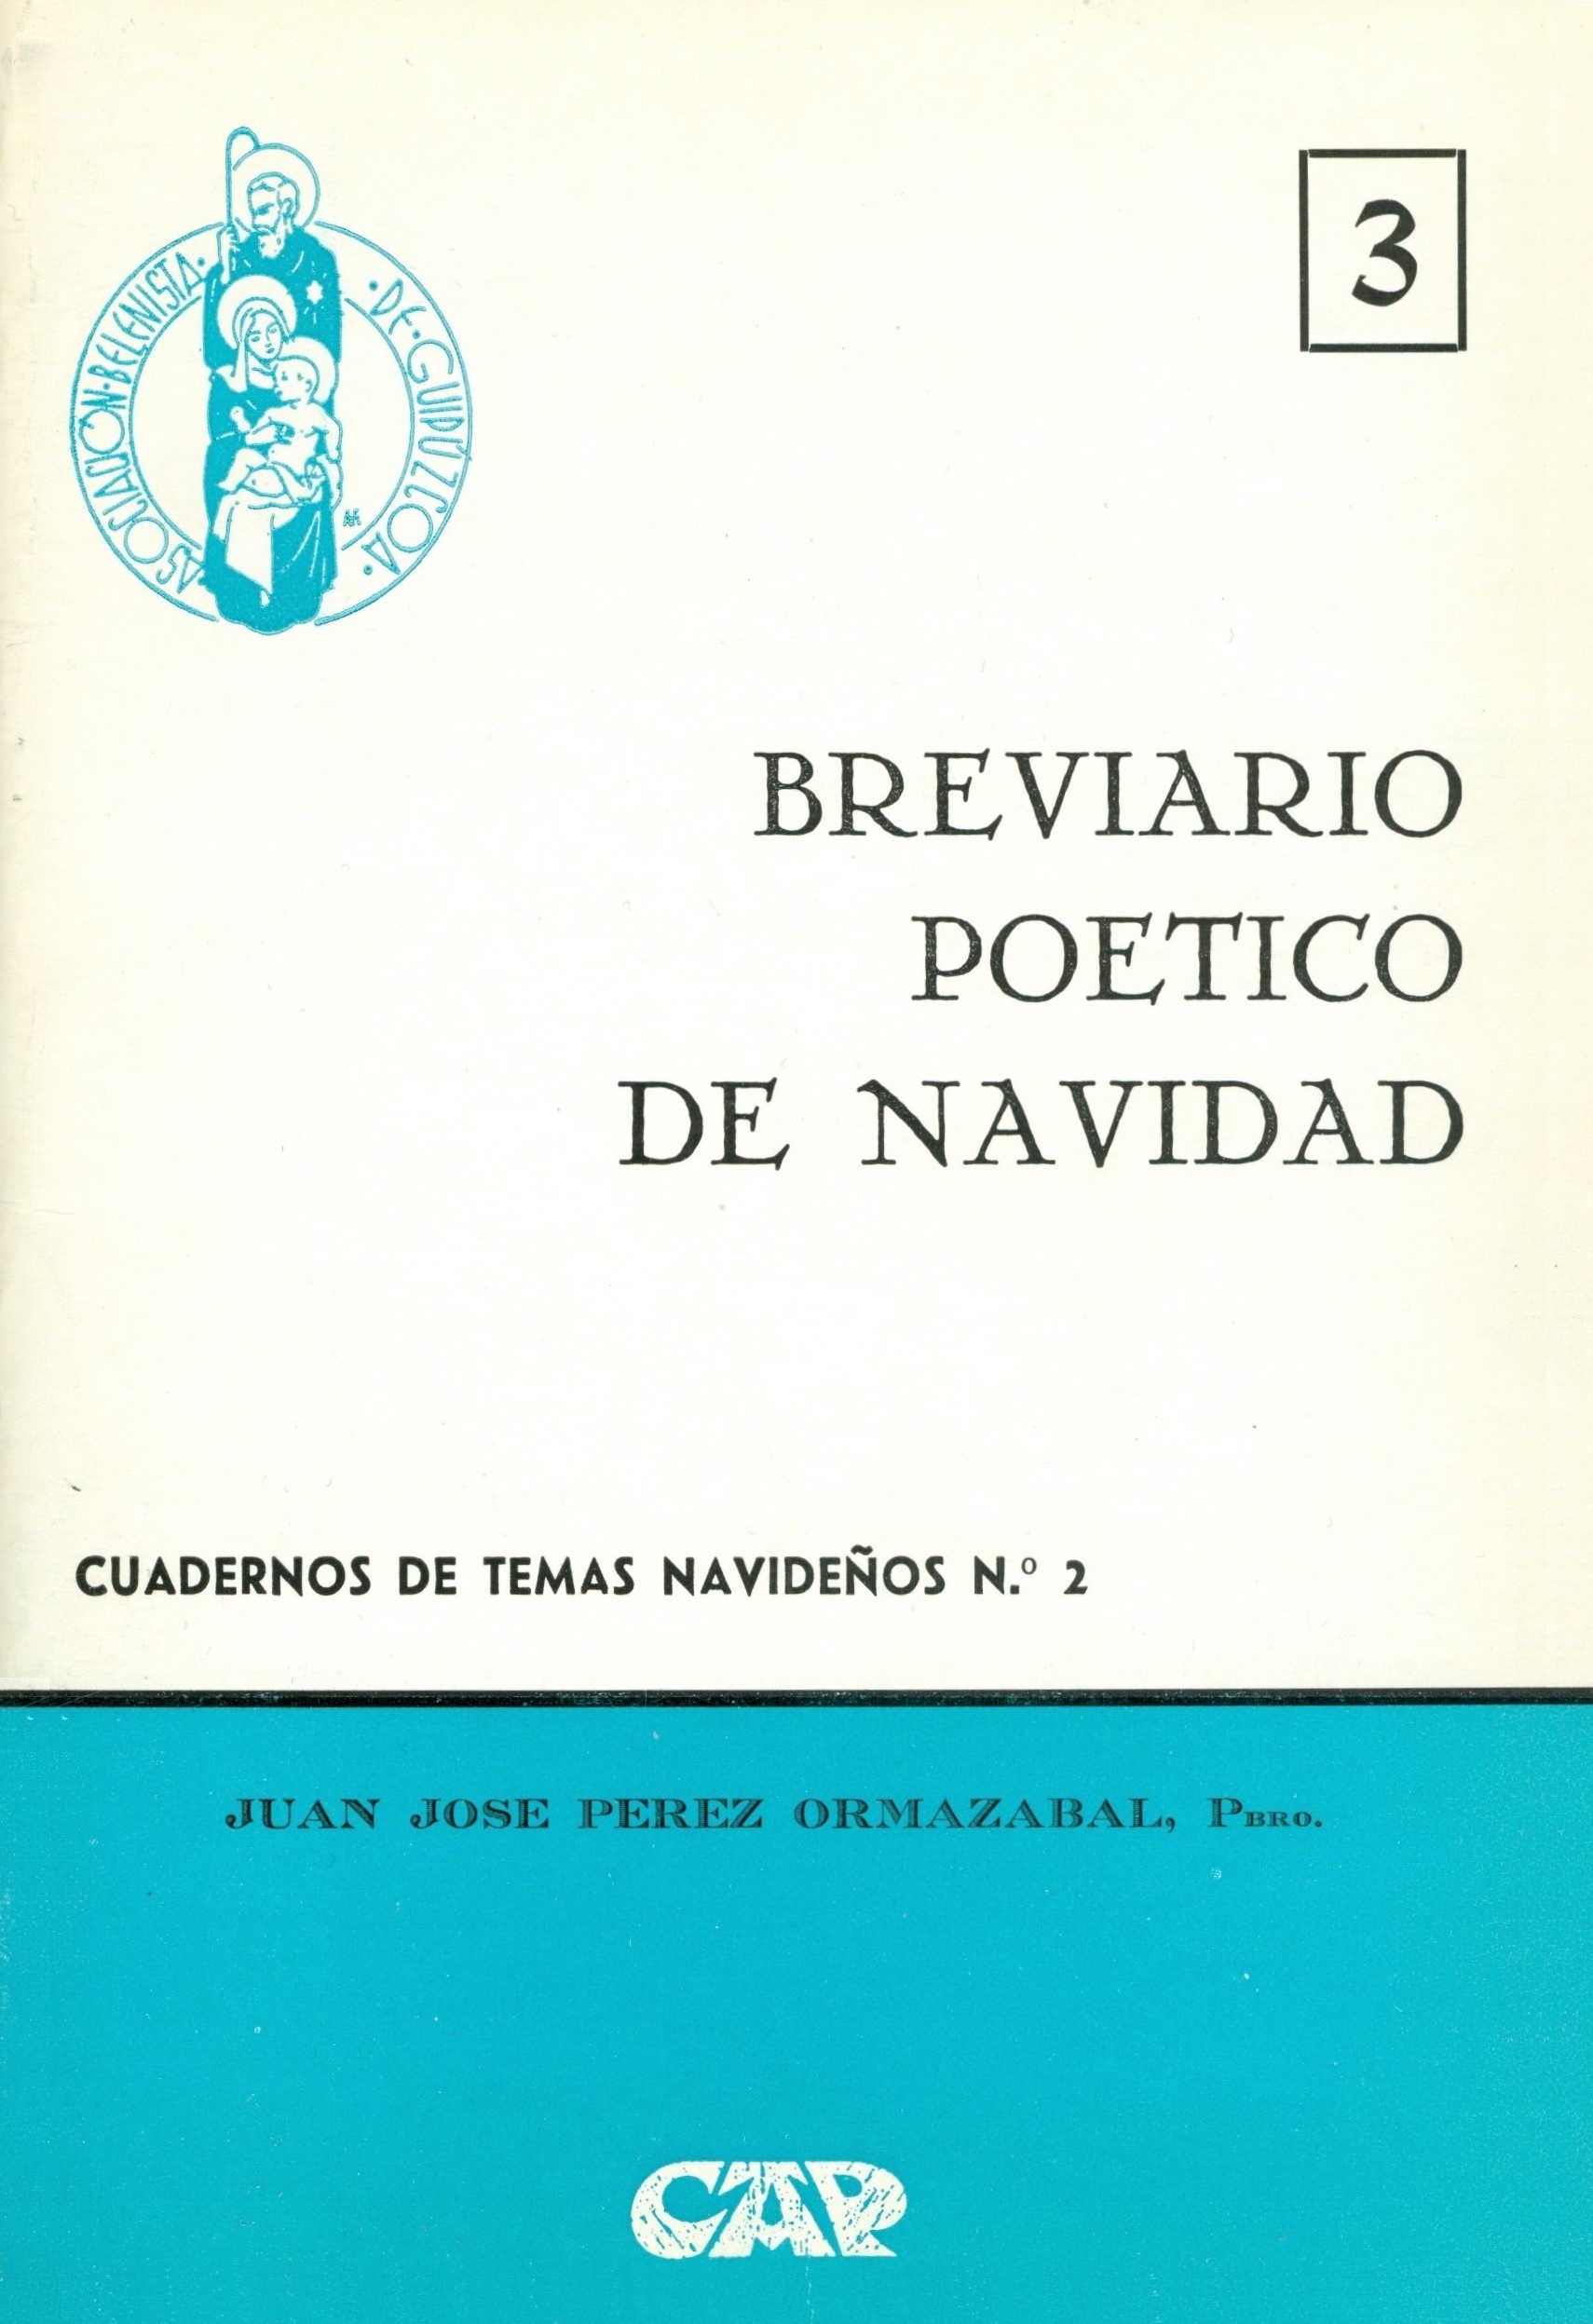 Portada del Cuaderno de Temas Navideños nº 2, "Breviario poético de Navidad" escrito por Juan José Pérez Ormazábal y editado por la Asociación Belenista de Guipúzcoa (1973)